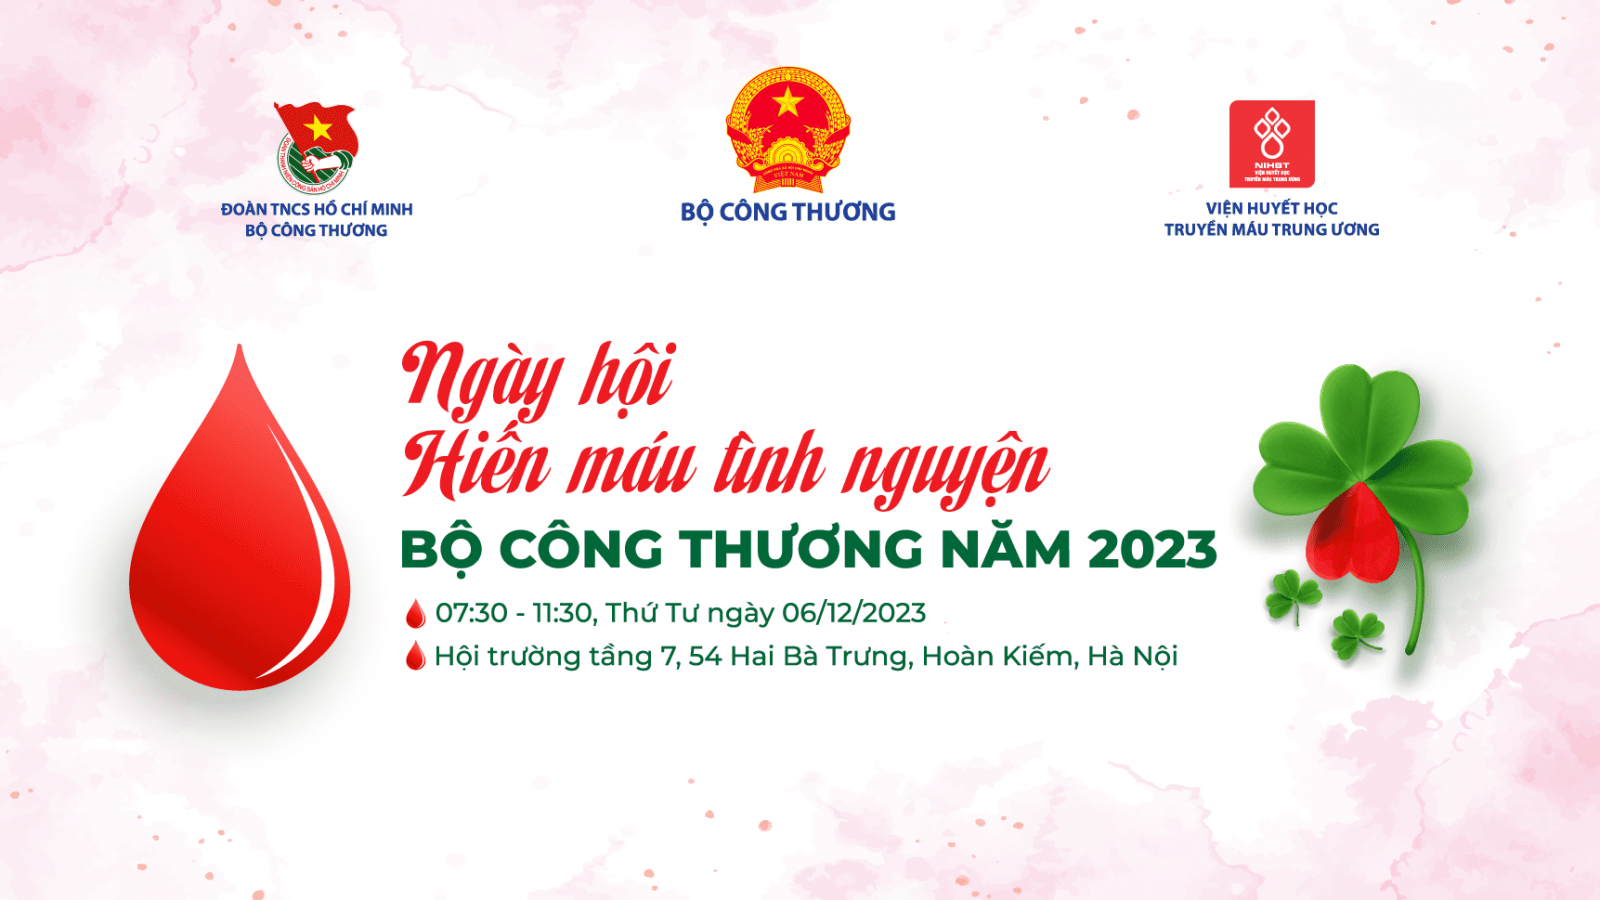 Cục ATMT tích cực hưởng ứng Ngày Hội hiến máu tình nguyện Bộ Công Thương năm 2023